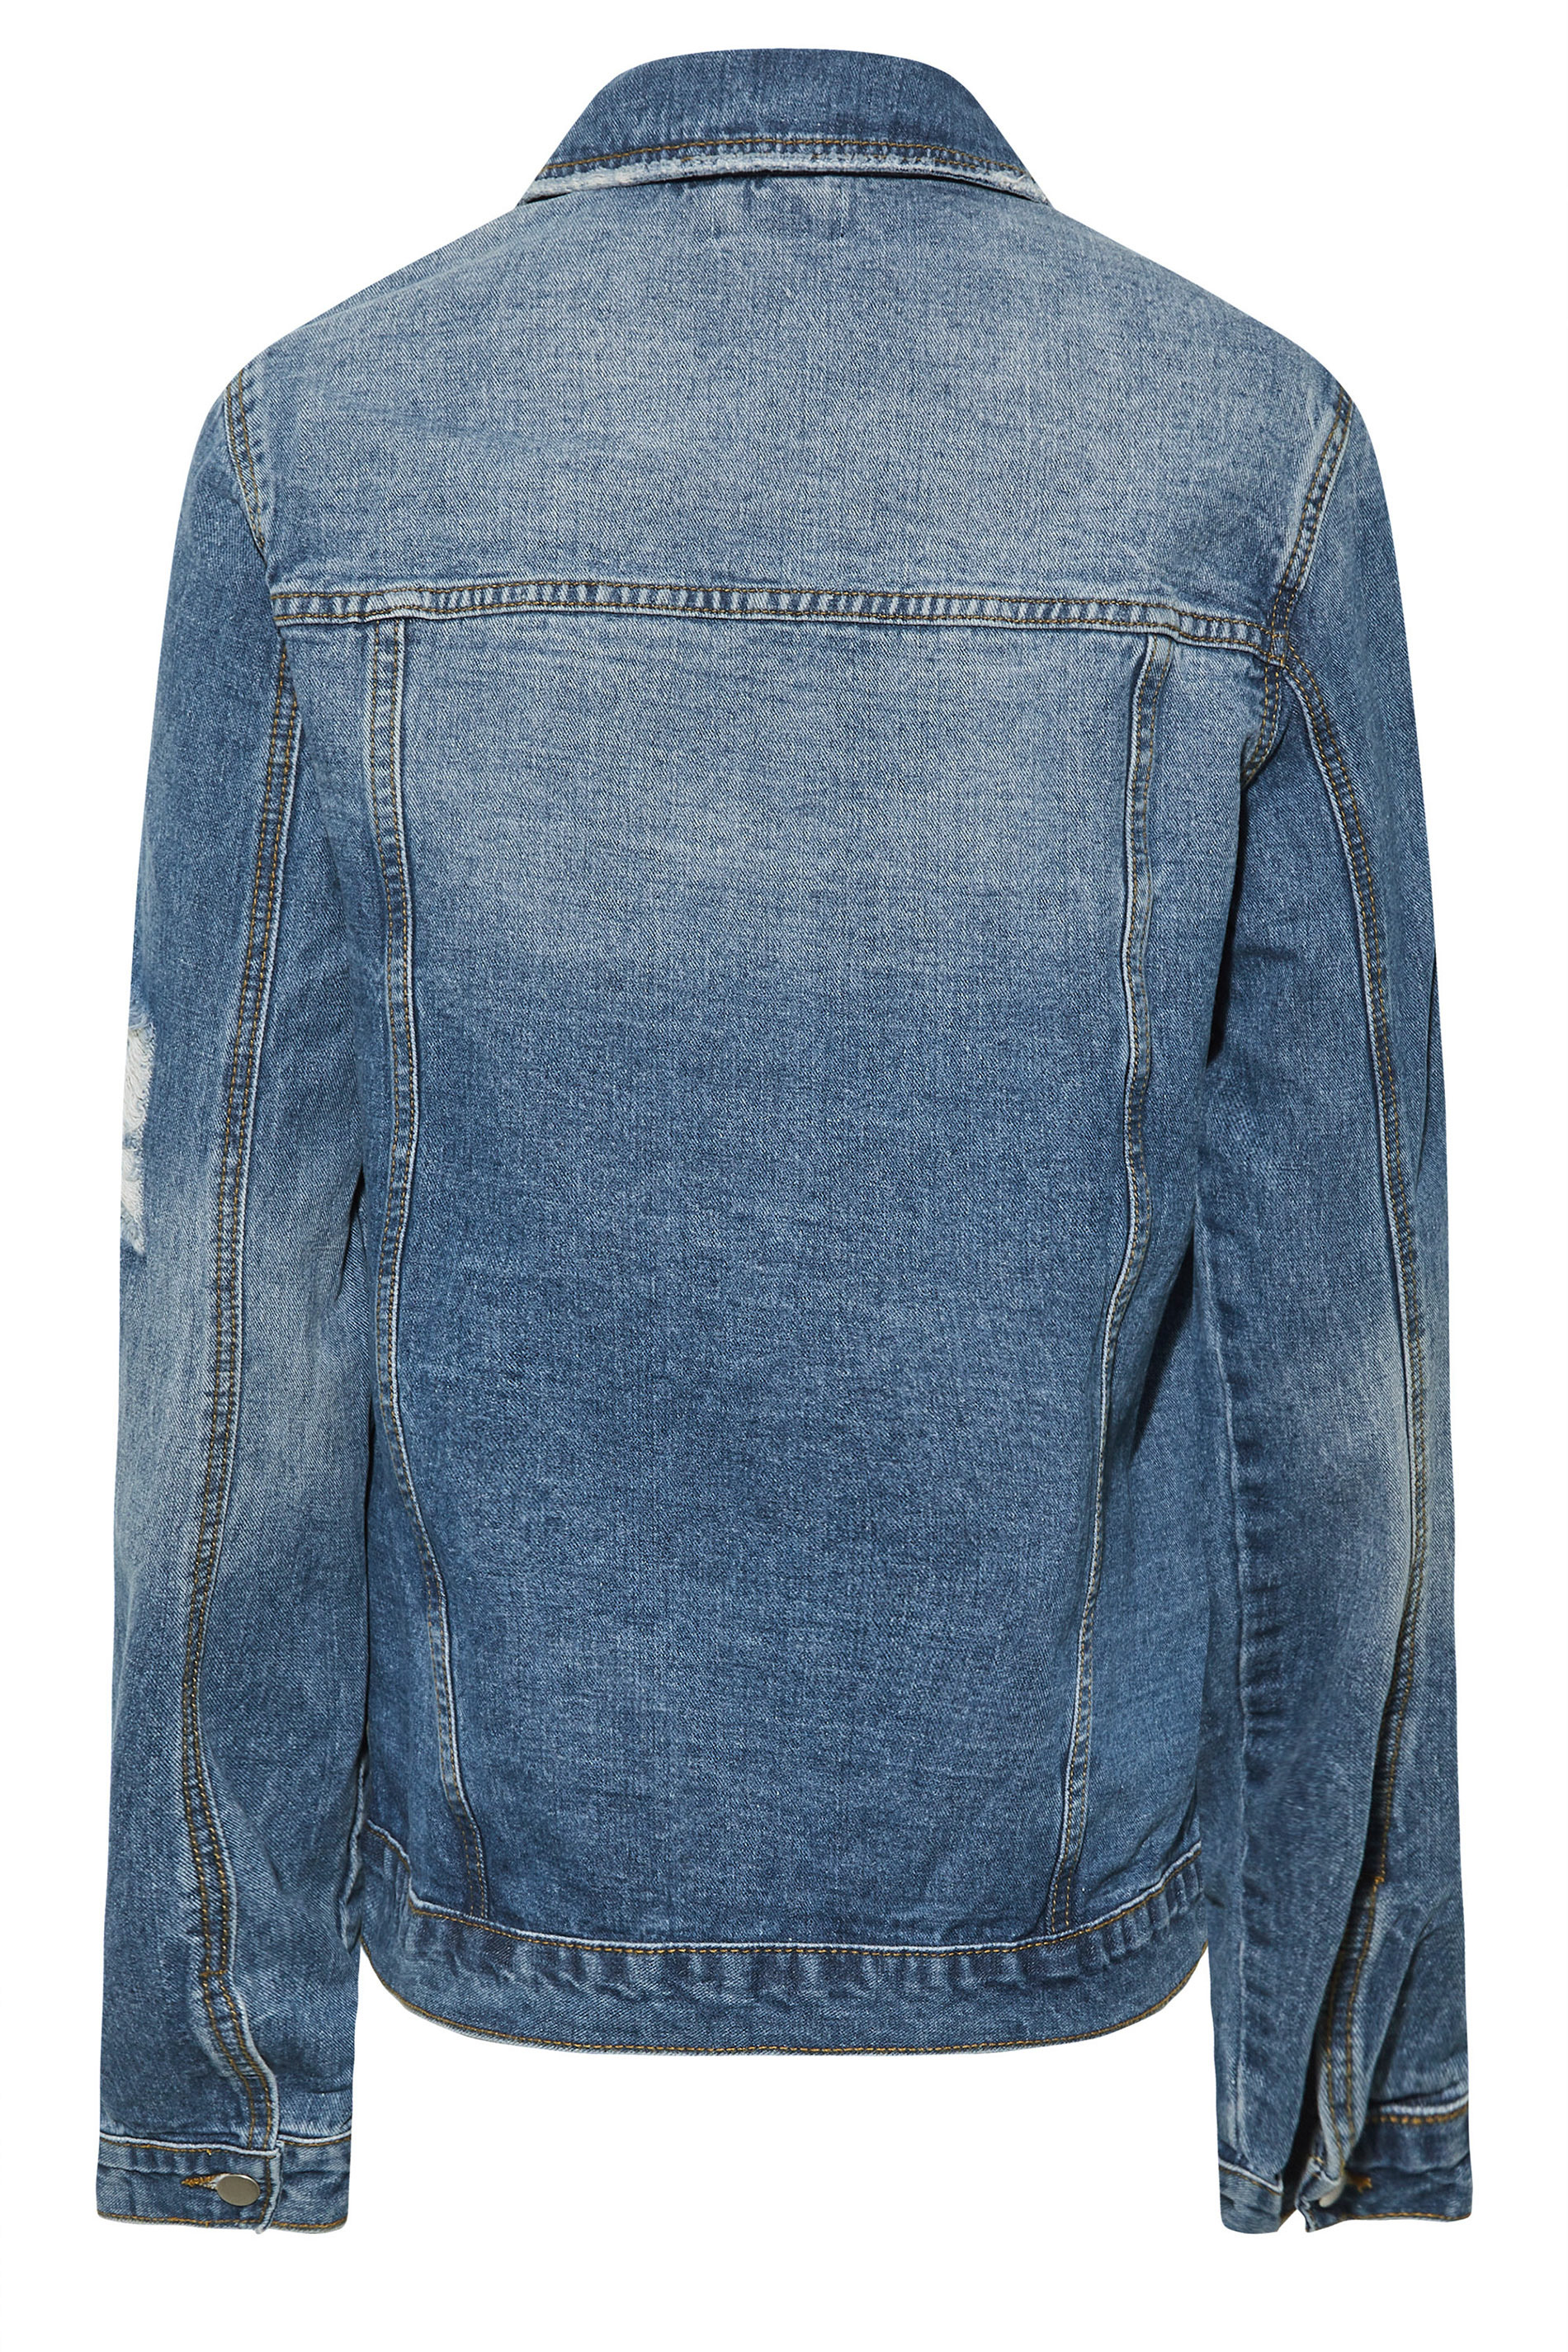 Tall Women's LTS Blue Mid Wash Distressed Denim Jacket | Long Tall Sally 3